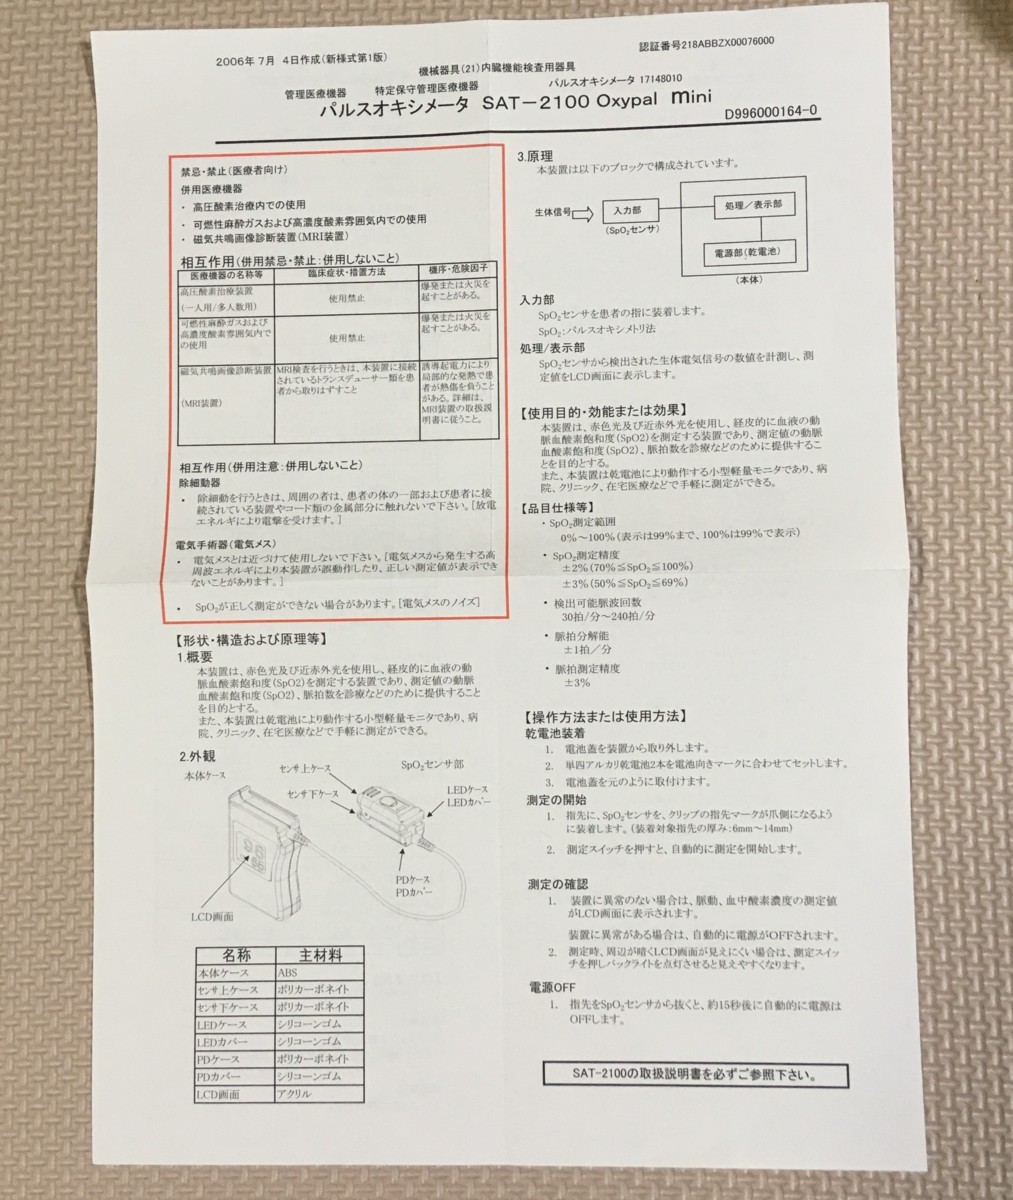  Япония свет электро- Pal sokisi измерительный прибор медицинская помощь оборудование повторное использование сенсор инструкция по эксплуатации функционирование гид nihonkohden. средний кислород степень насыщенности spo2 пациент .. концентрация организм 